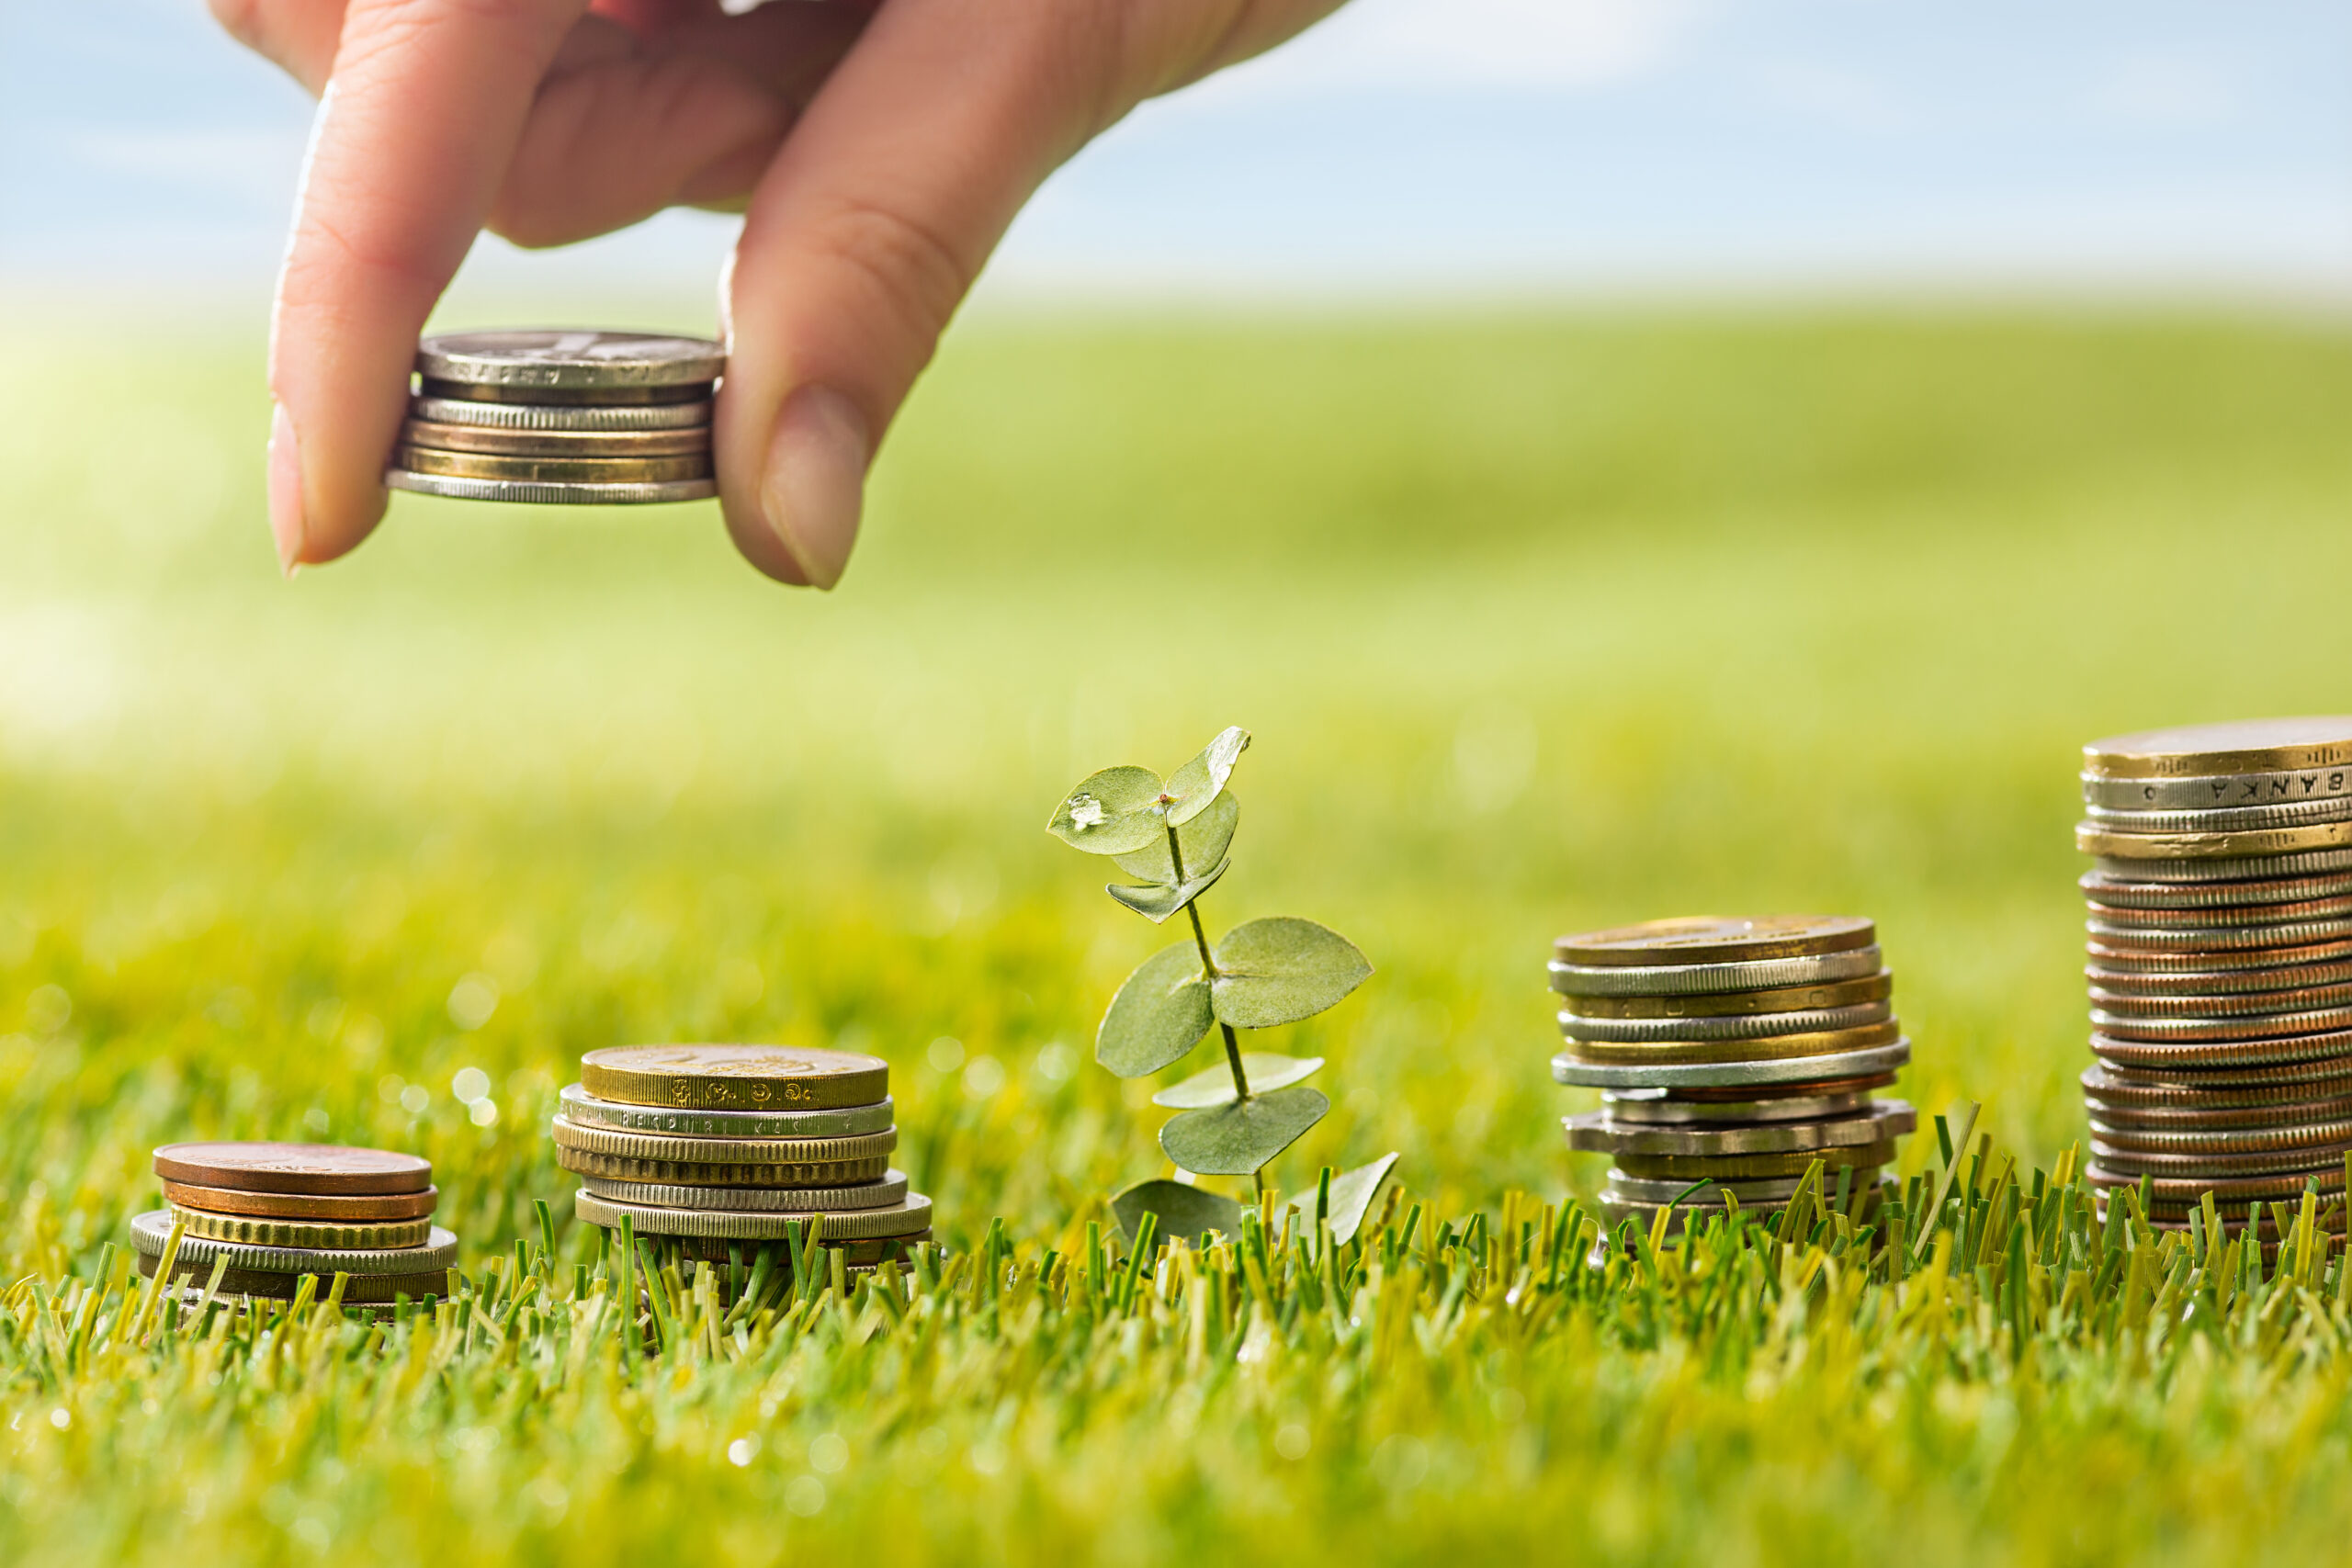 ลงทุนวิถีใหม่ “Sustainable Investment” เน้นยั่งยืน รับผลตอบแทนระยะยาว – การเงิน